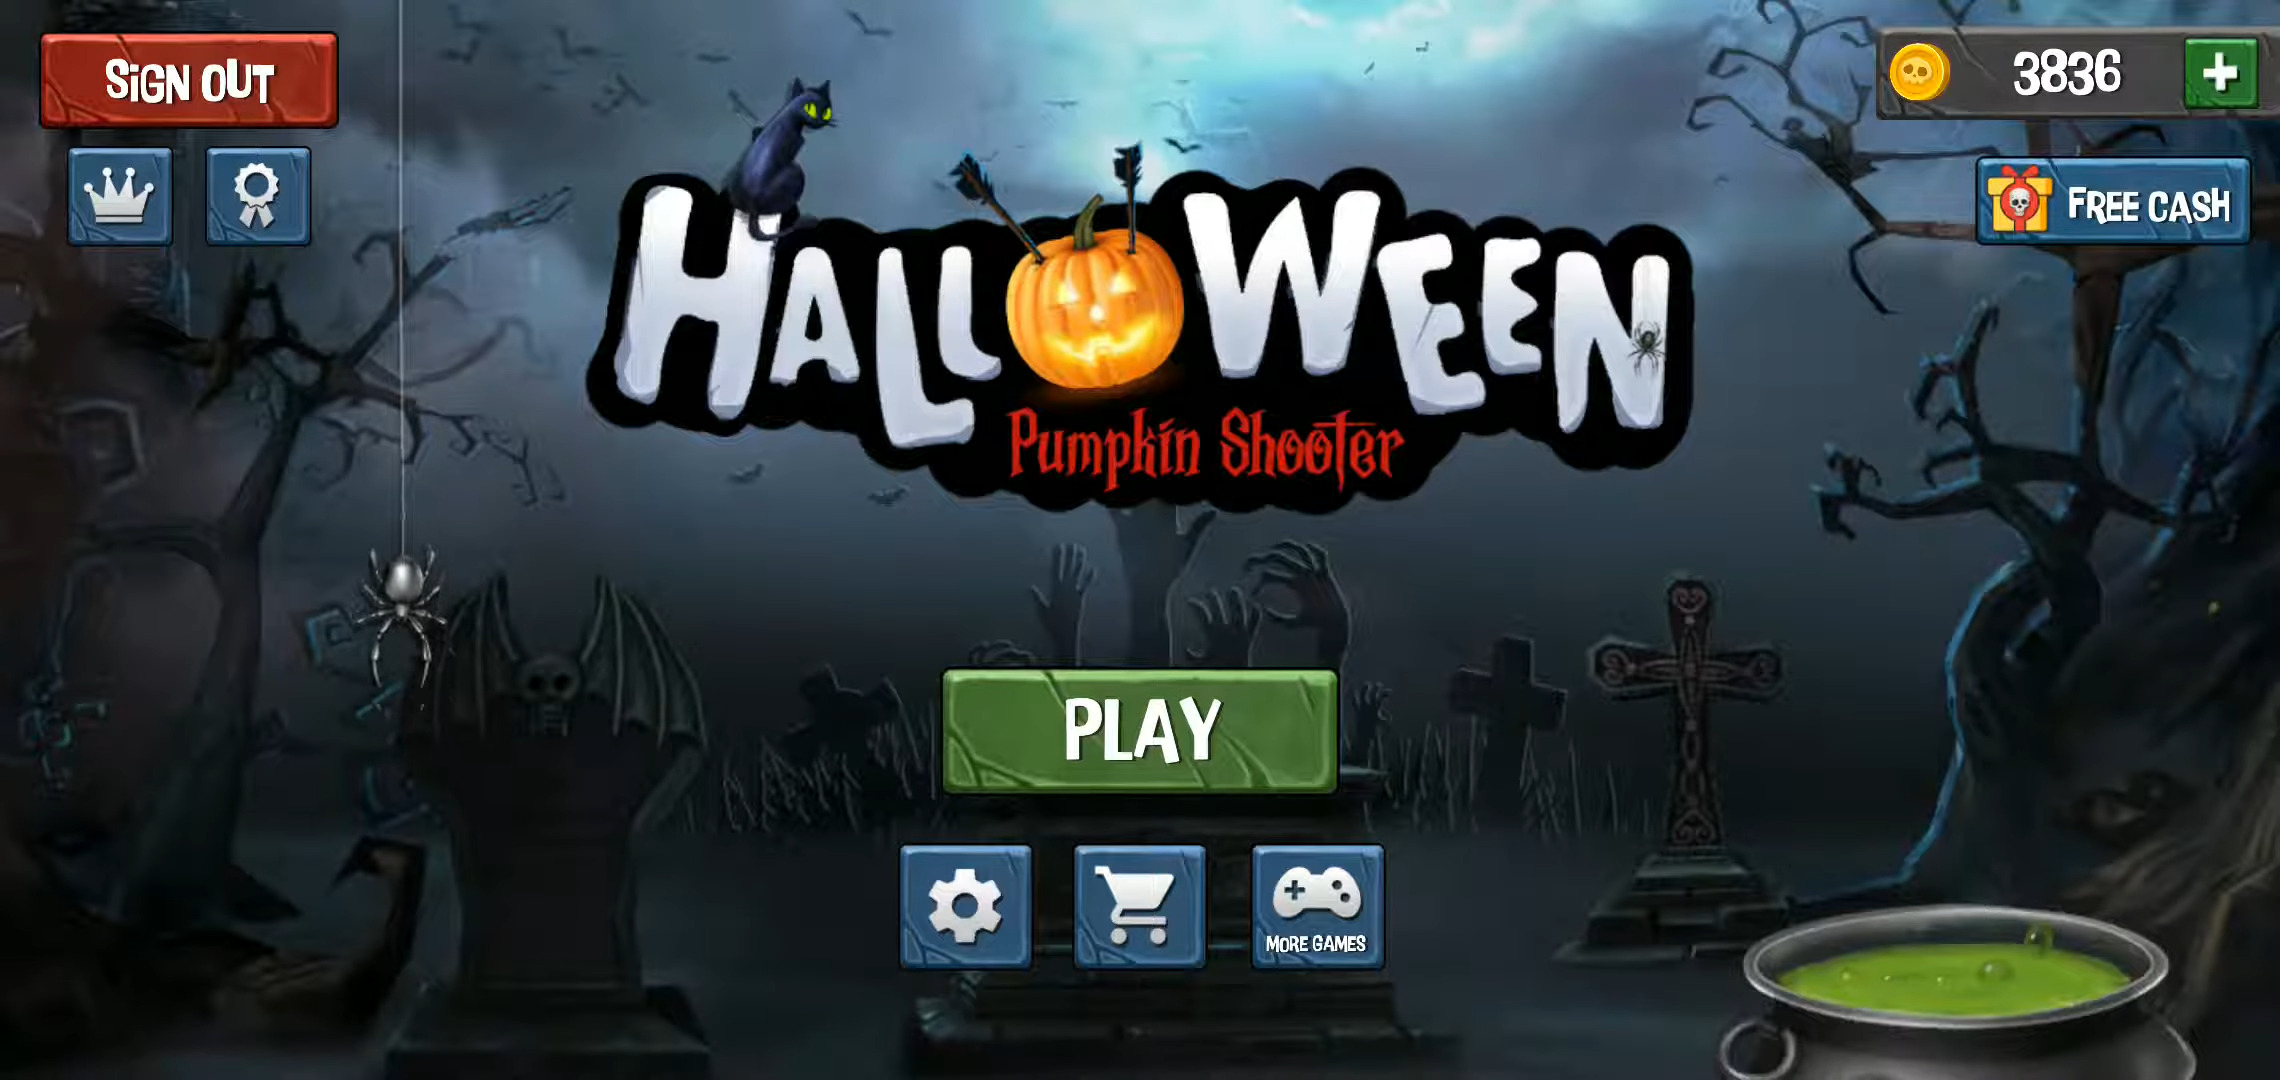 Descargar Pumpkin Shooter - Halloween gratis para Android.